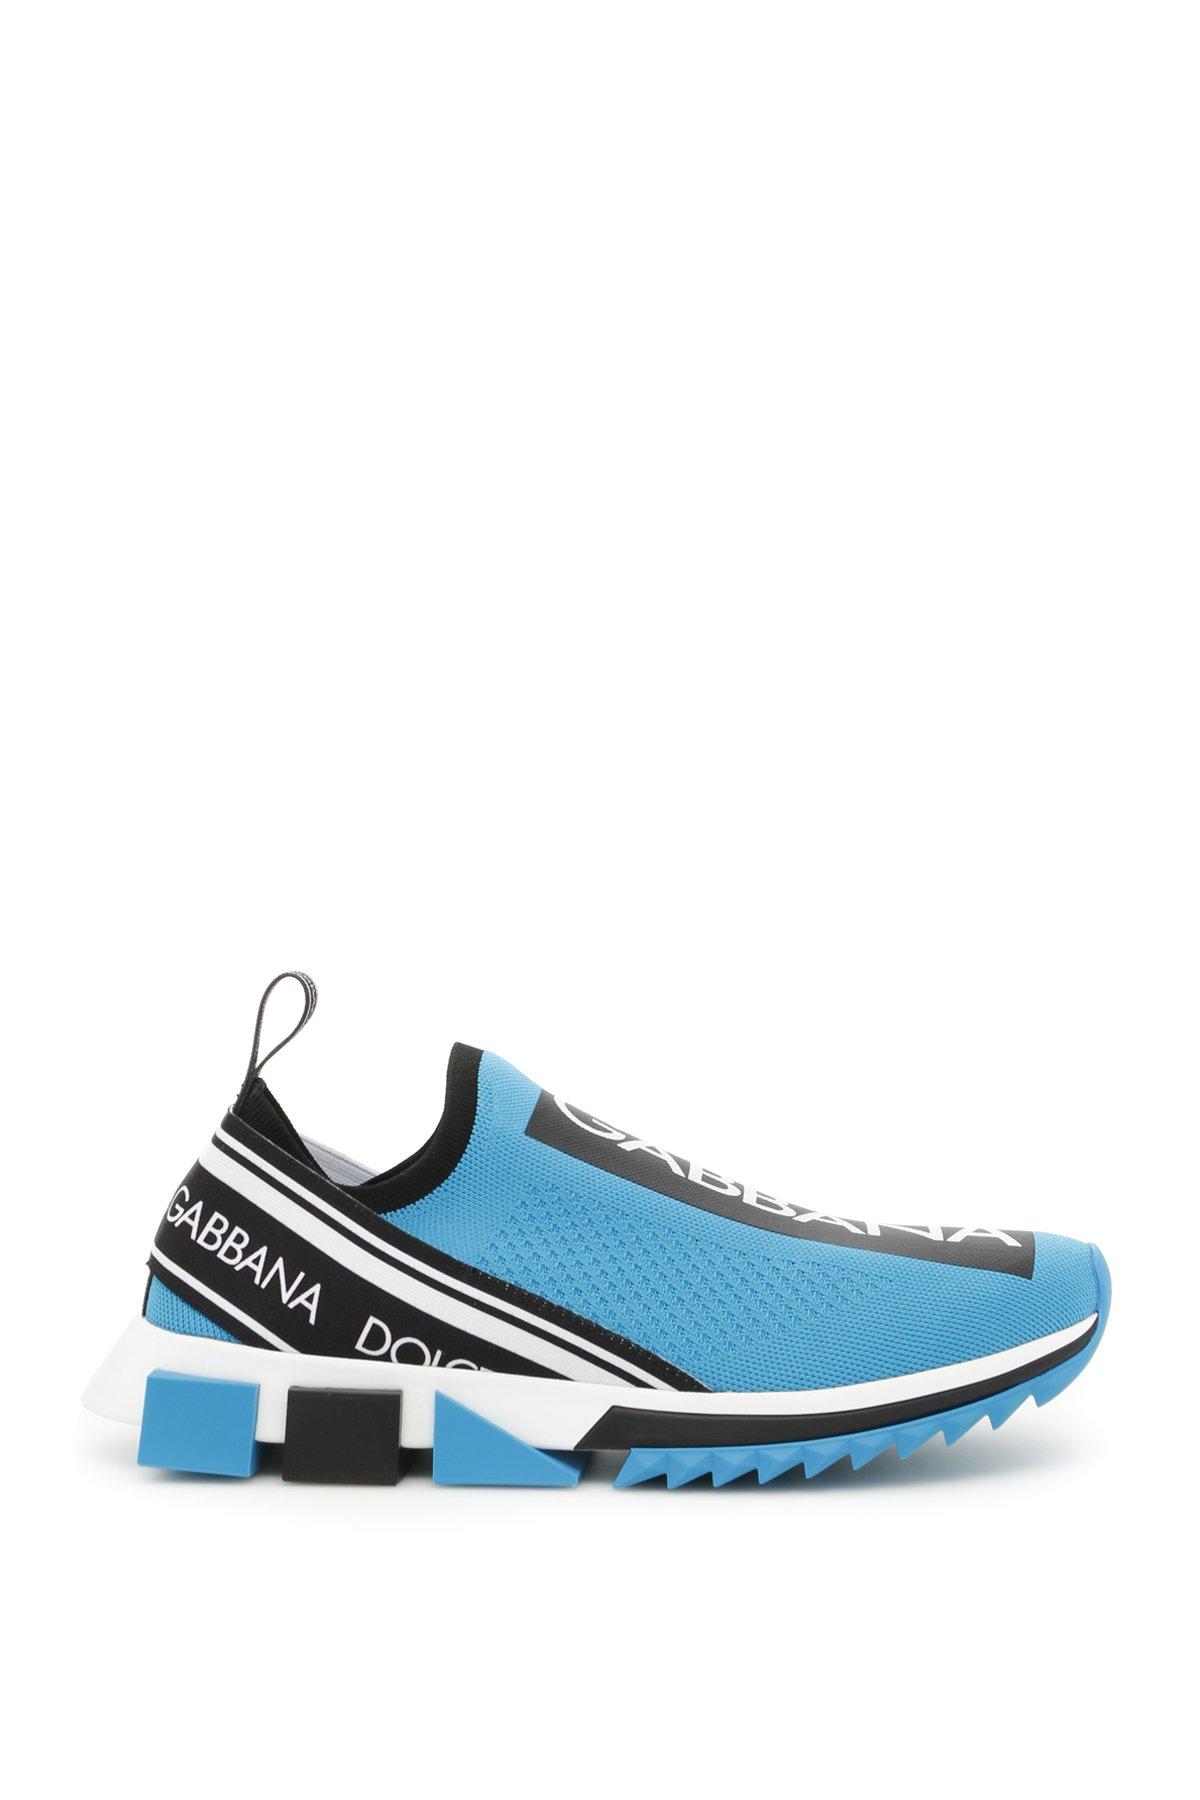 Dolce & Gabbana Rubber Branded Sorrento Sock Sneakers in Blue for Men ...